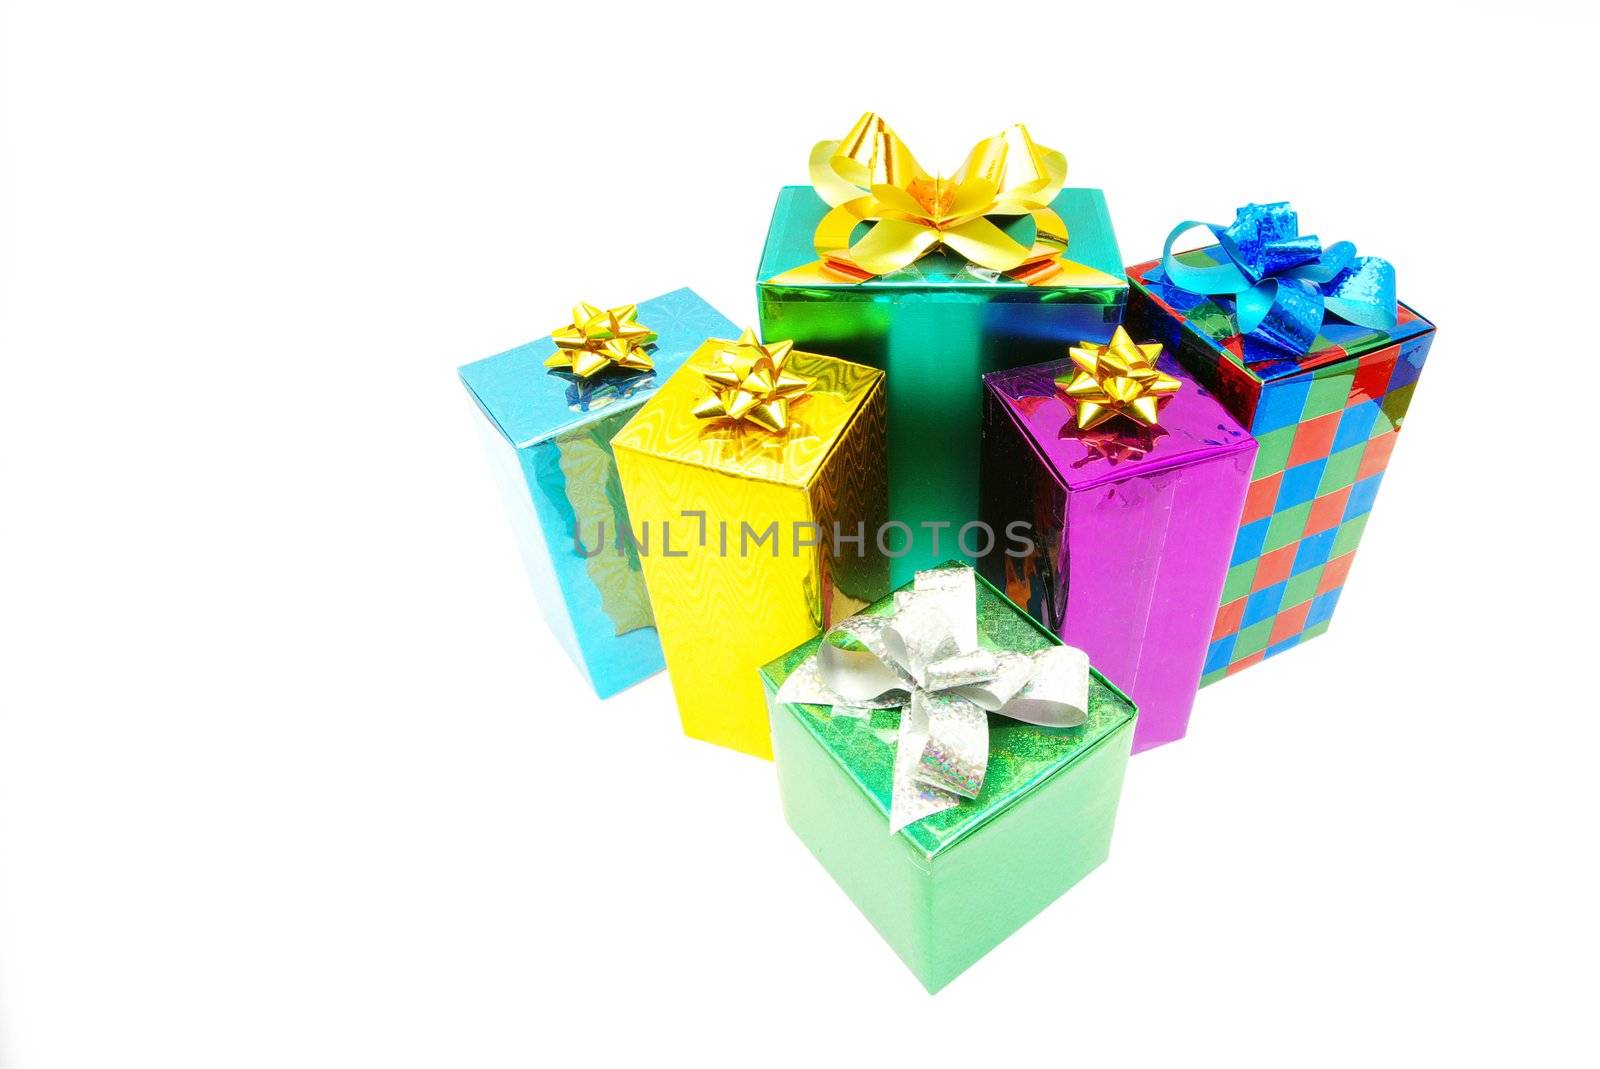 Christmas gifts by Pakhnyushchyy